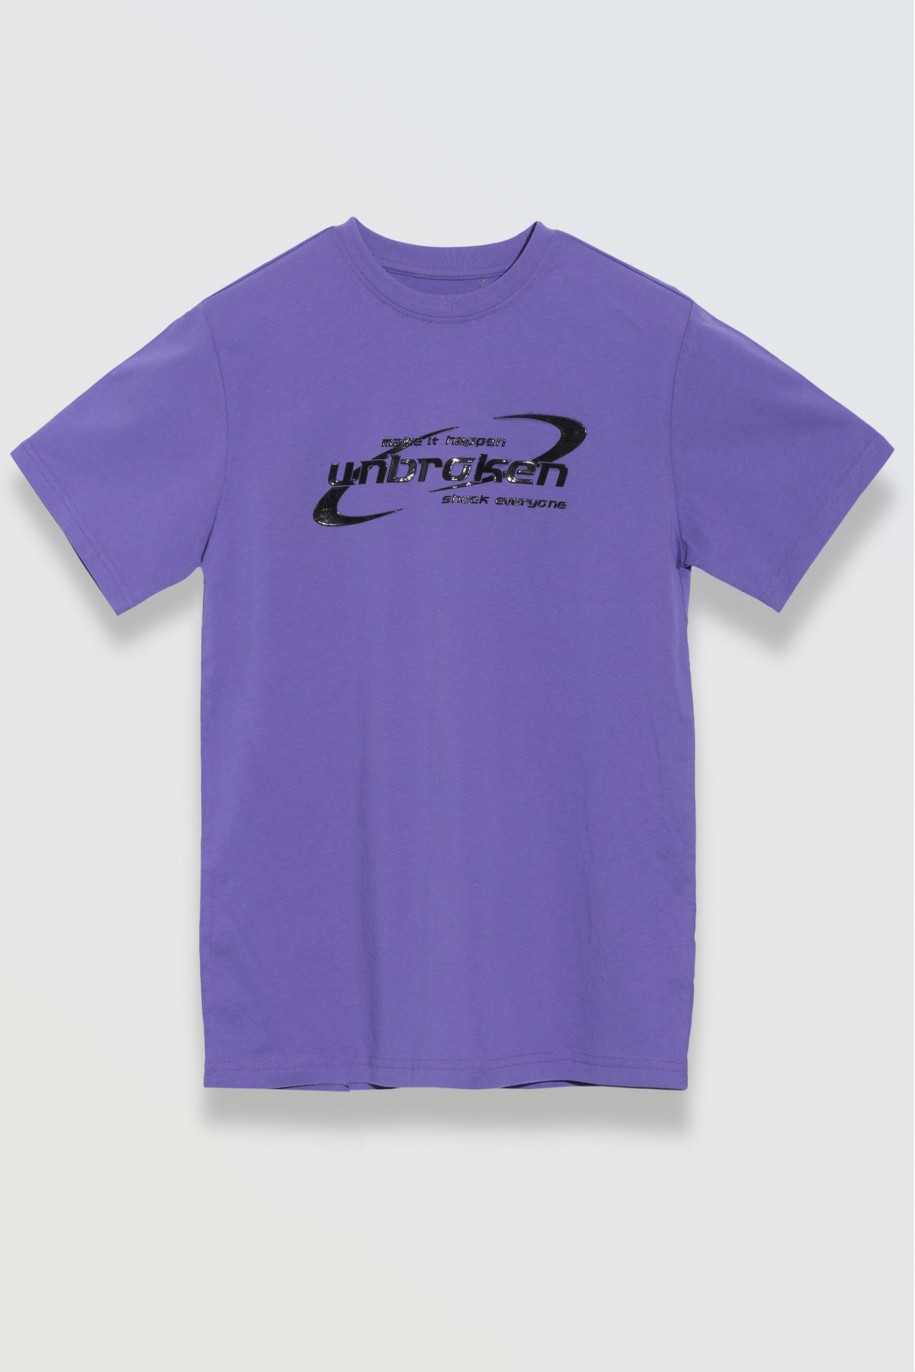 Fioletowy t-shirt z nadrukiem na wysokości piersi - 46713